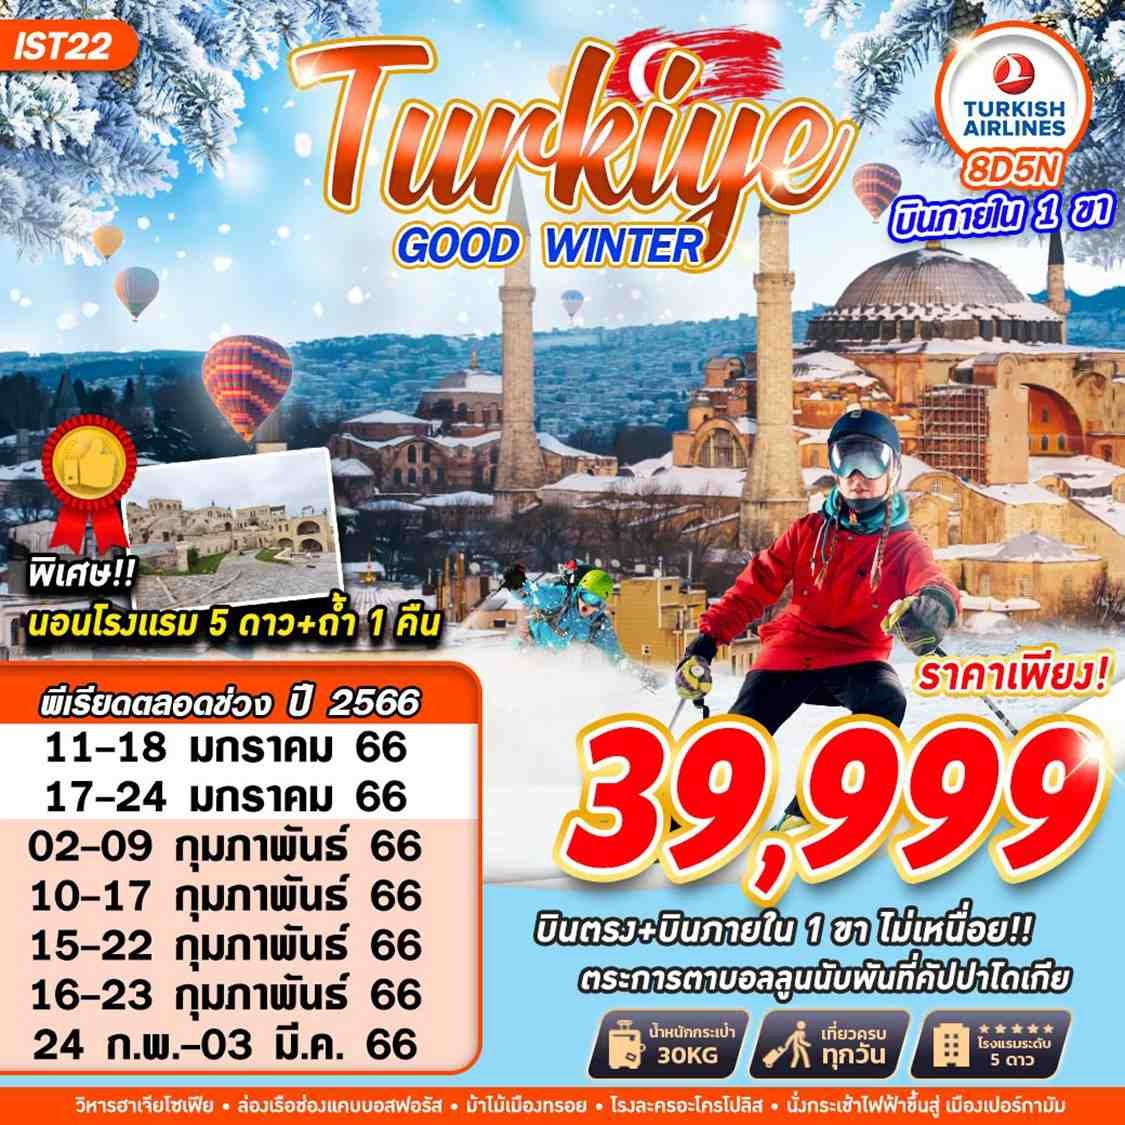 ทัวร์ตุรเคีย TURKEY GOOD WINTER 8 วัน 5 คืน (บินภายใน 1 ขา)